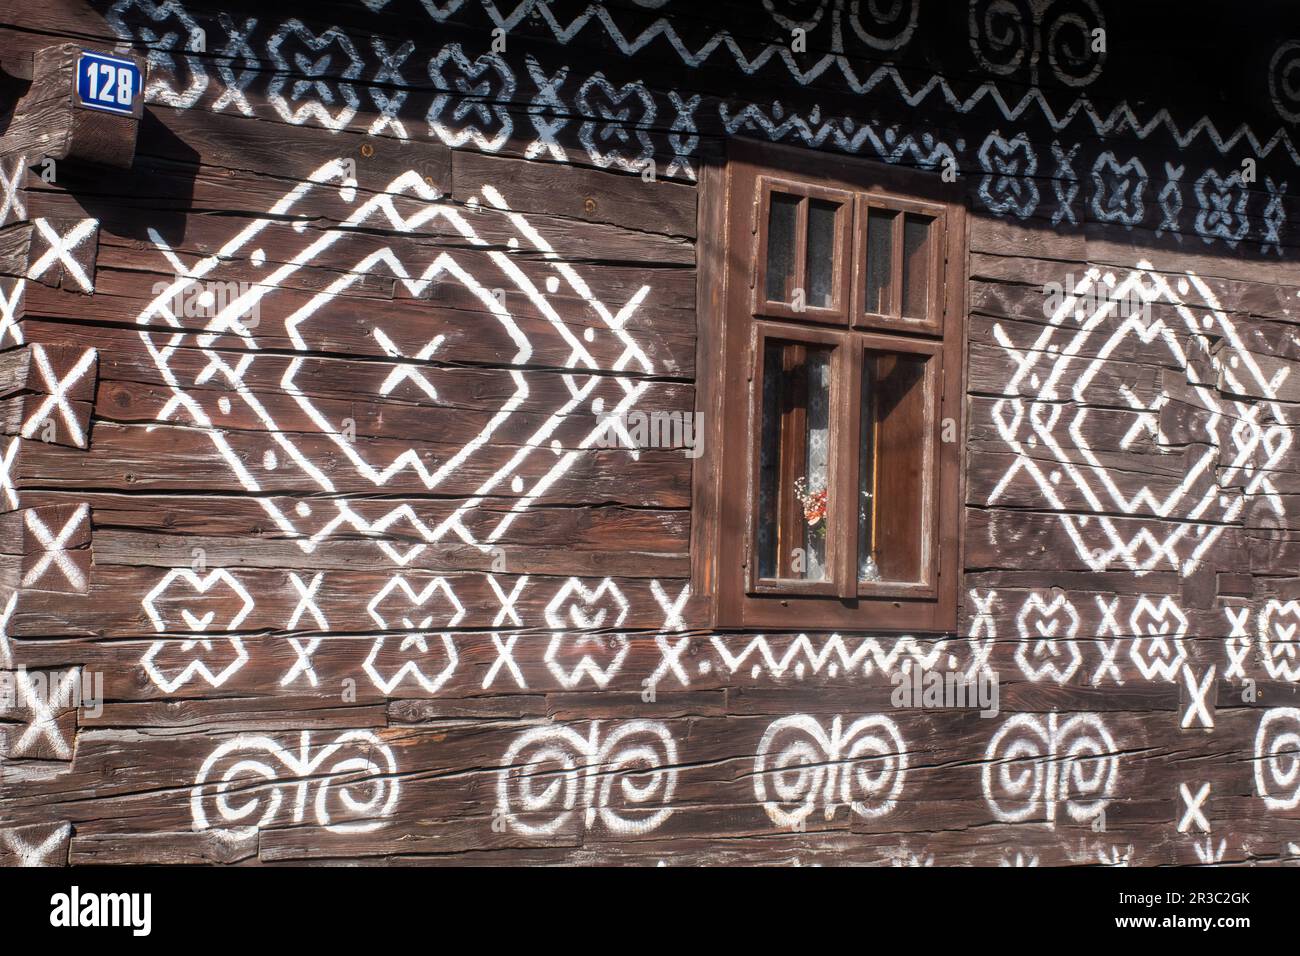 Lato della casa decorata in bianco e nero nel villaggio popolare slovacco di Cicamany Foto Stock